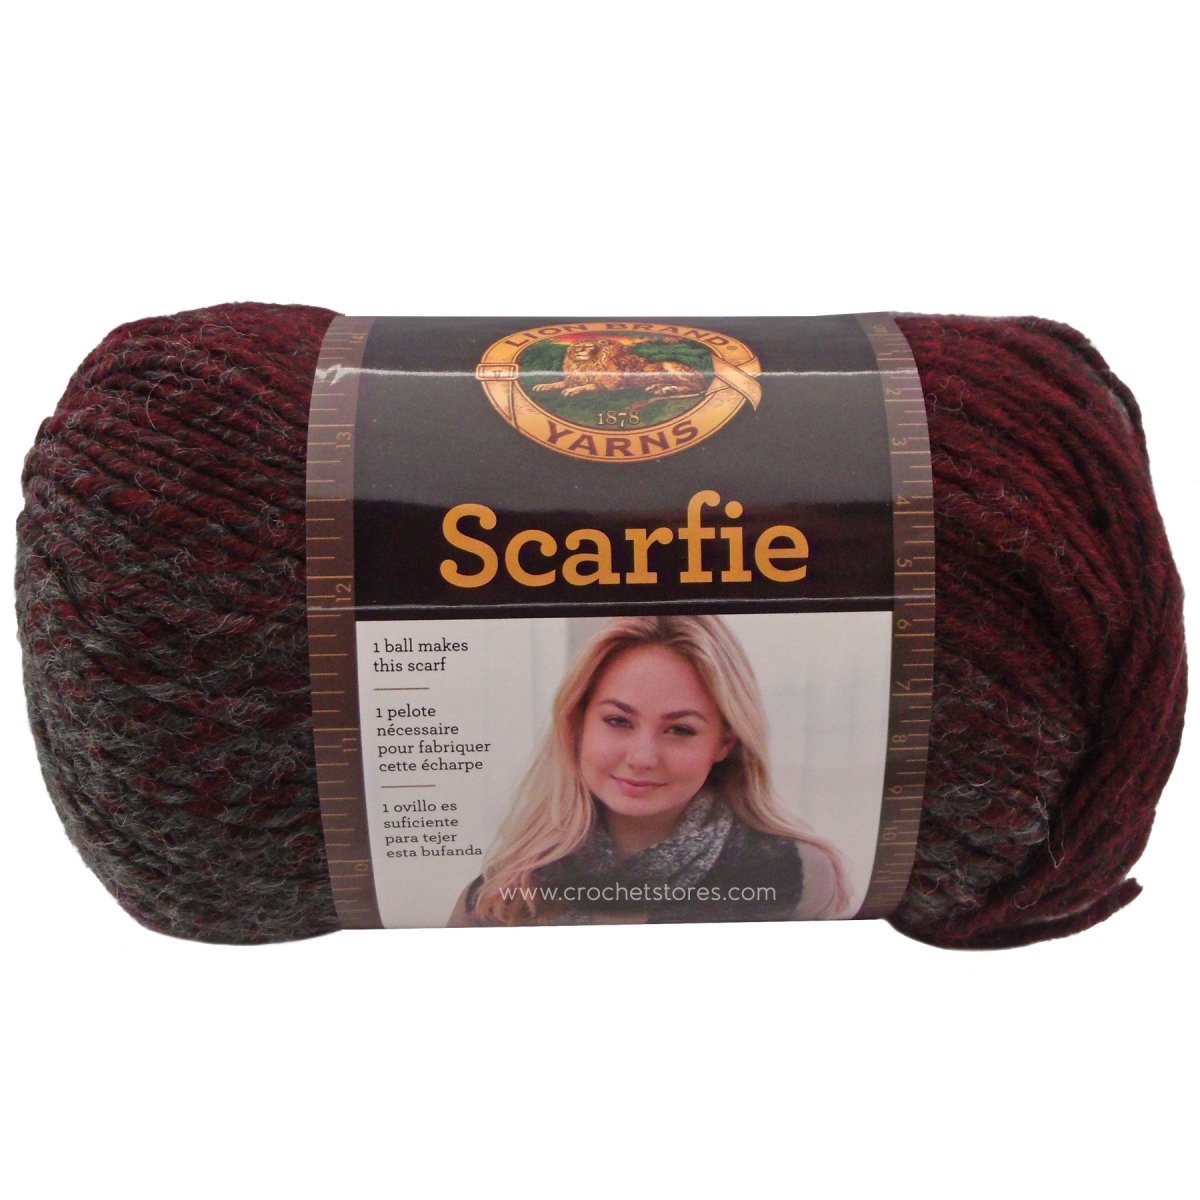 SCARFIE - Crochetstores826-208